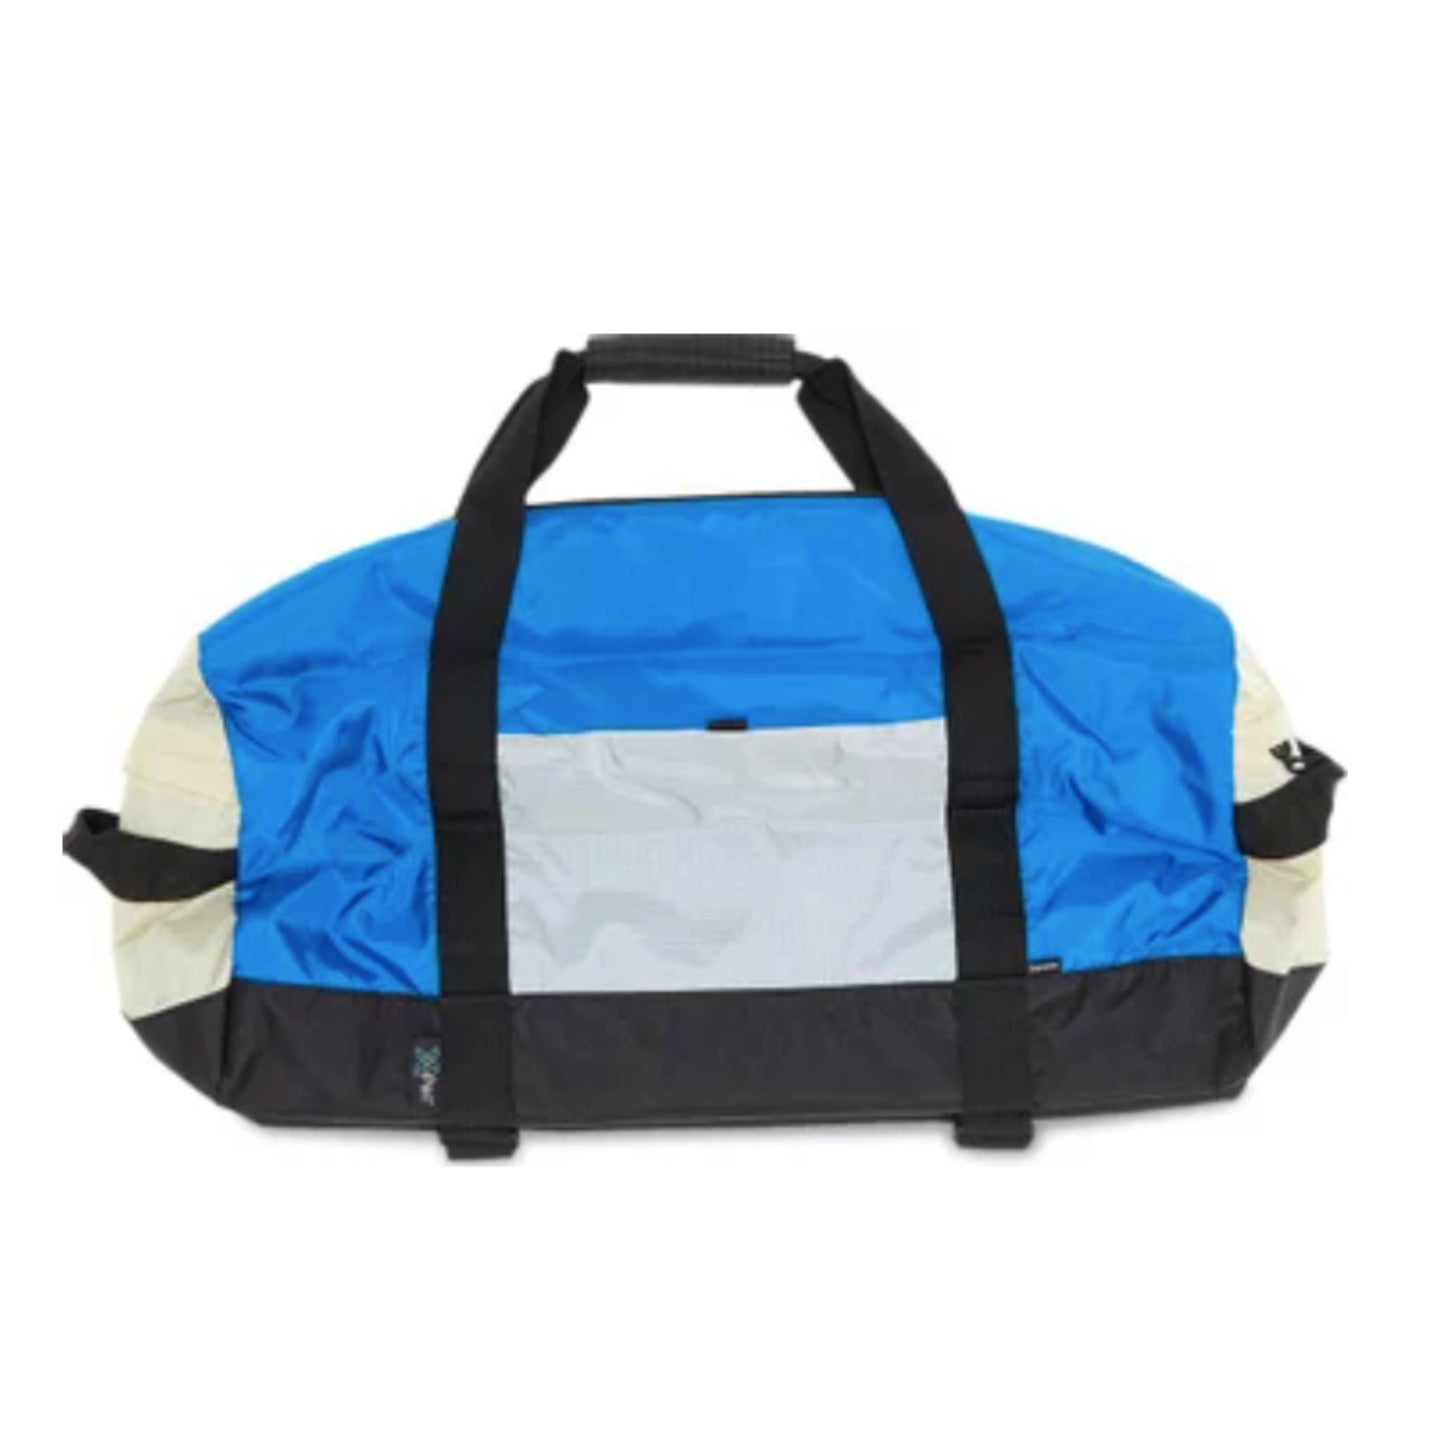 Buy Supreme Duffle Bag 'Blue' - FW23B15 BLUE